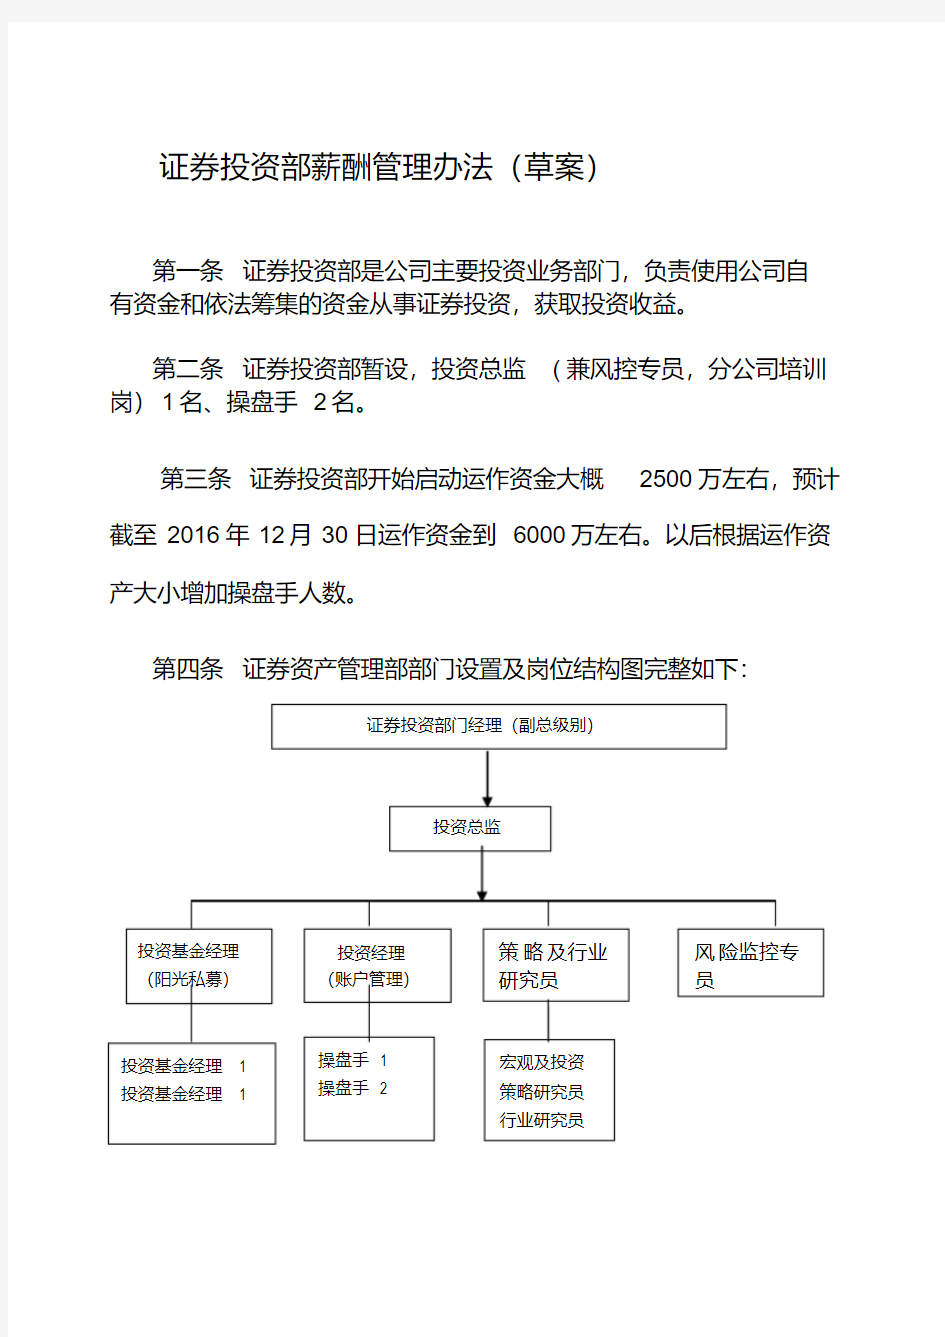 私募基金证券投资部薪酬管理(草案).pdf